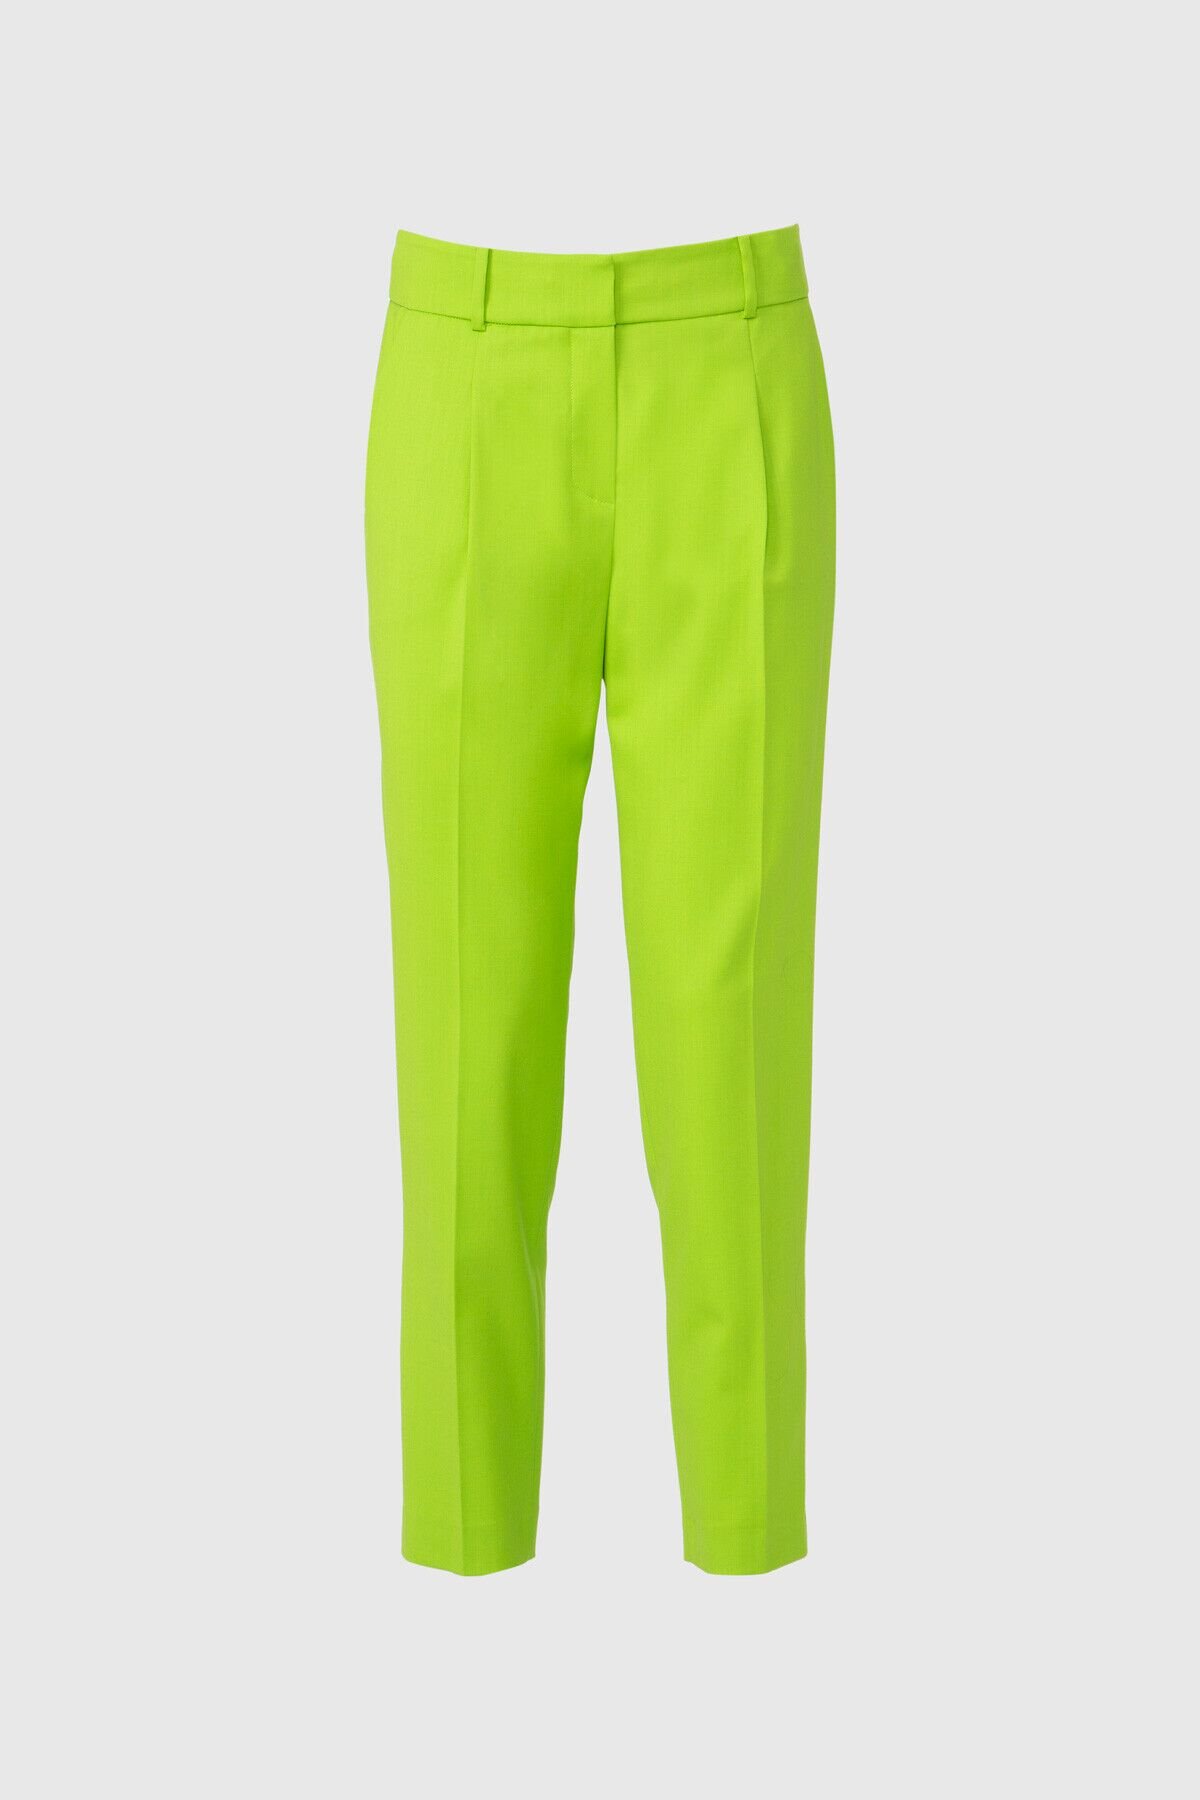 Klasik Bilek Boy Yeşil Pantolon - Gizia